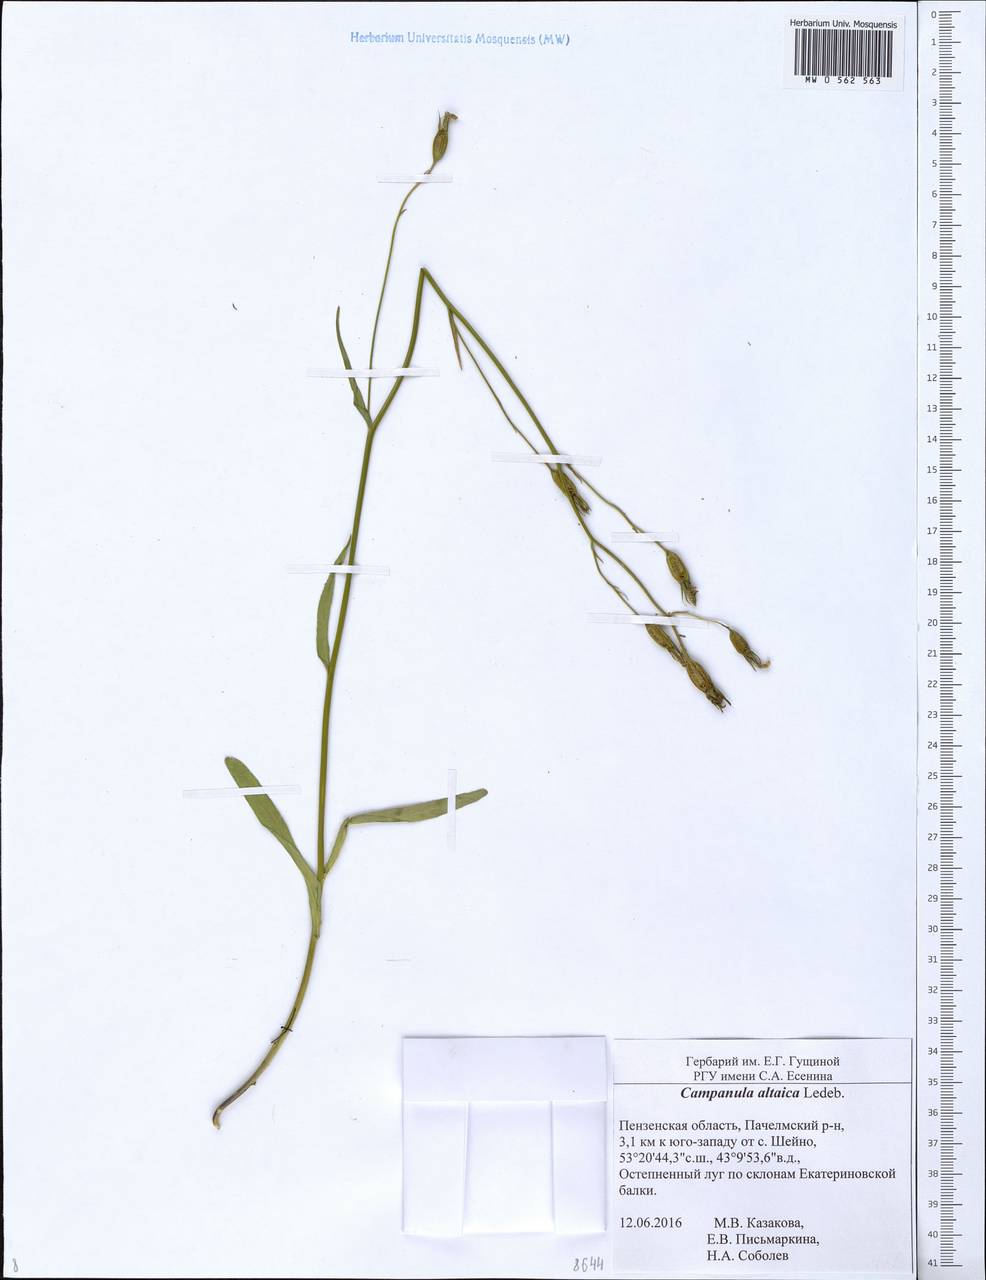 Campanula stevenii subsp. altaica (Ledeb.) Fed., Eastern Europe, Middle Volga region (E8) (Russia)